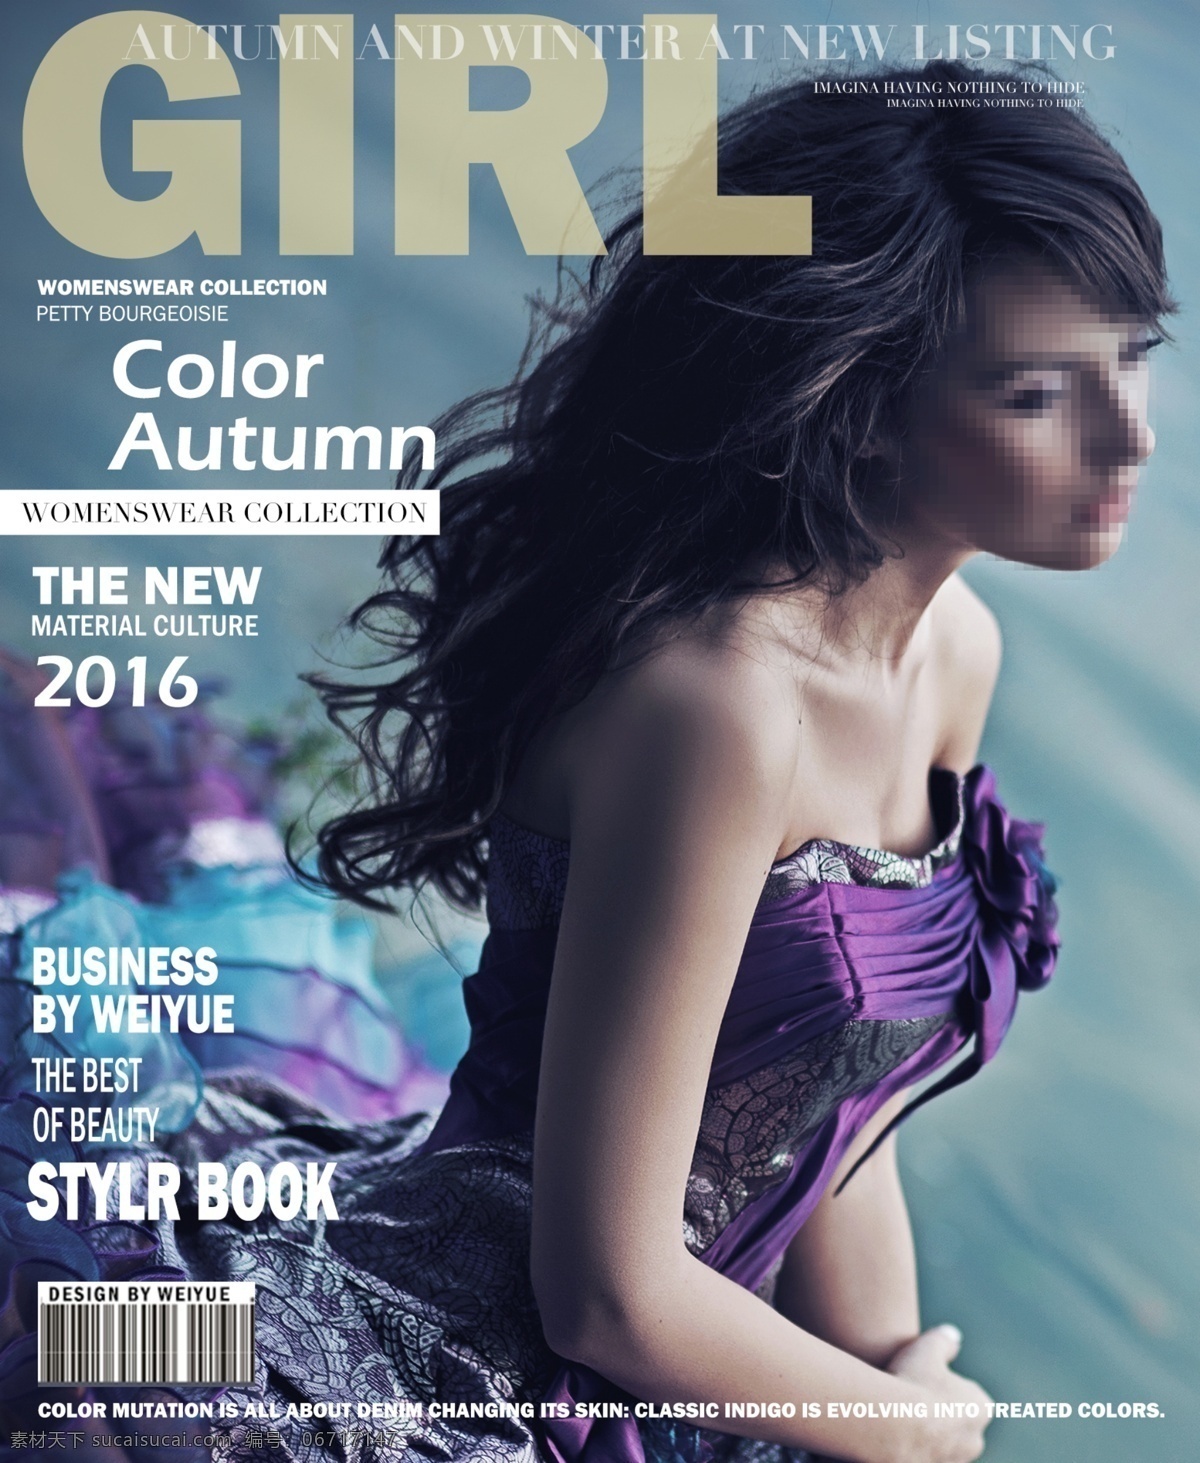 2016 女装 新品 杂志 封面 psd模板 广告设计模板 杂志封面 其他模版 黑色